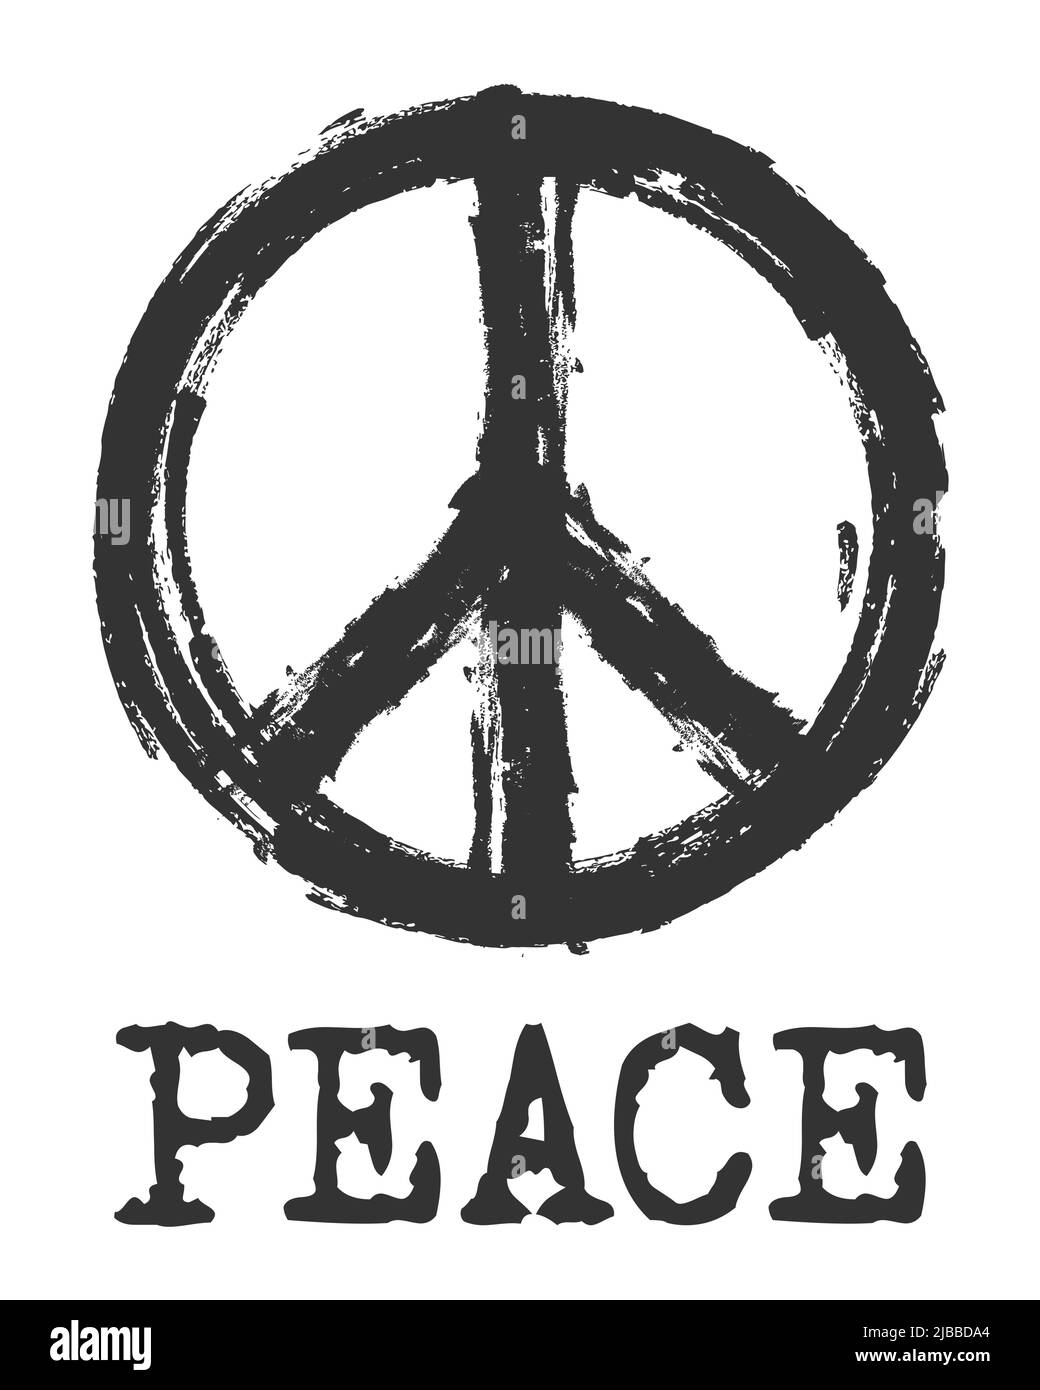 Simbolo di pace . Mano realistica disegnata con lo stile di trama del gesso. Firma della Campagna per il disarmo nucleare ( CND ). Design piatto . PAC tranquillo e hippie Illustrazione Vettoriale